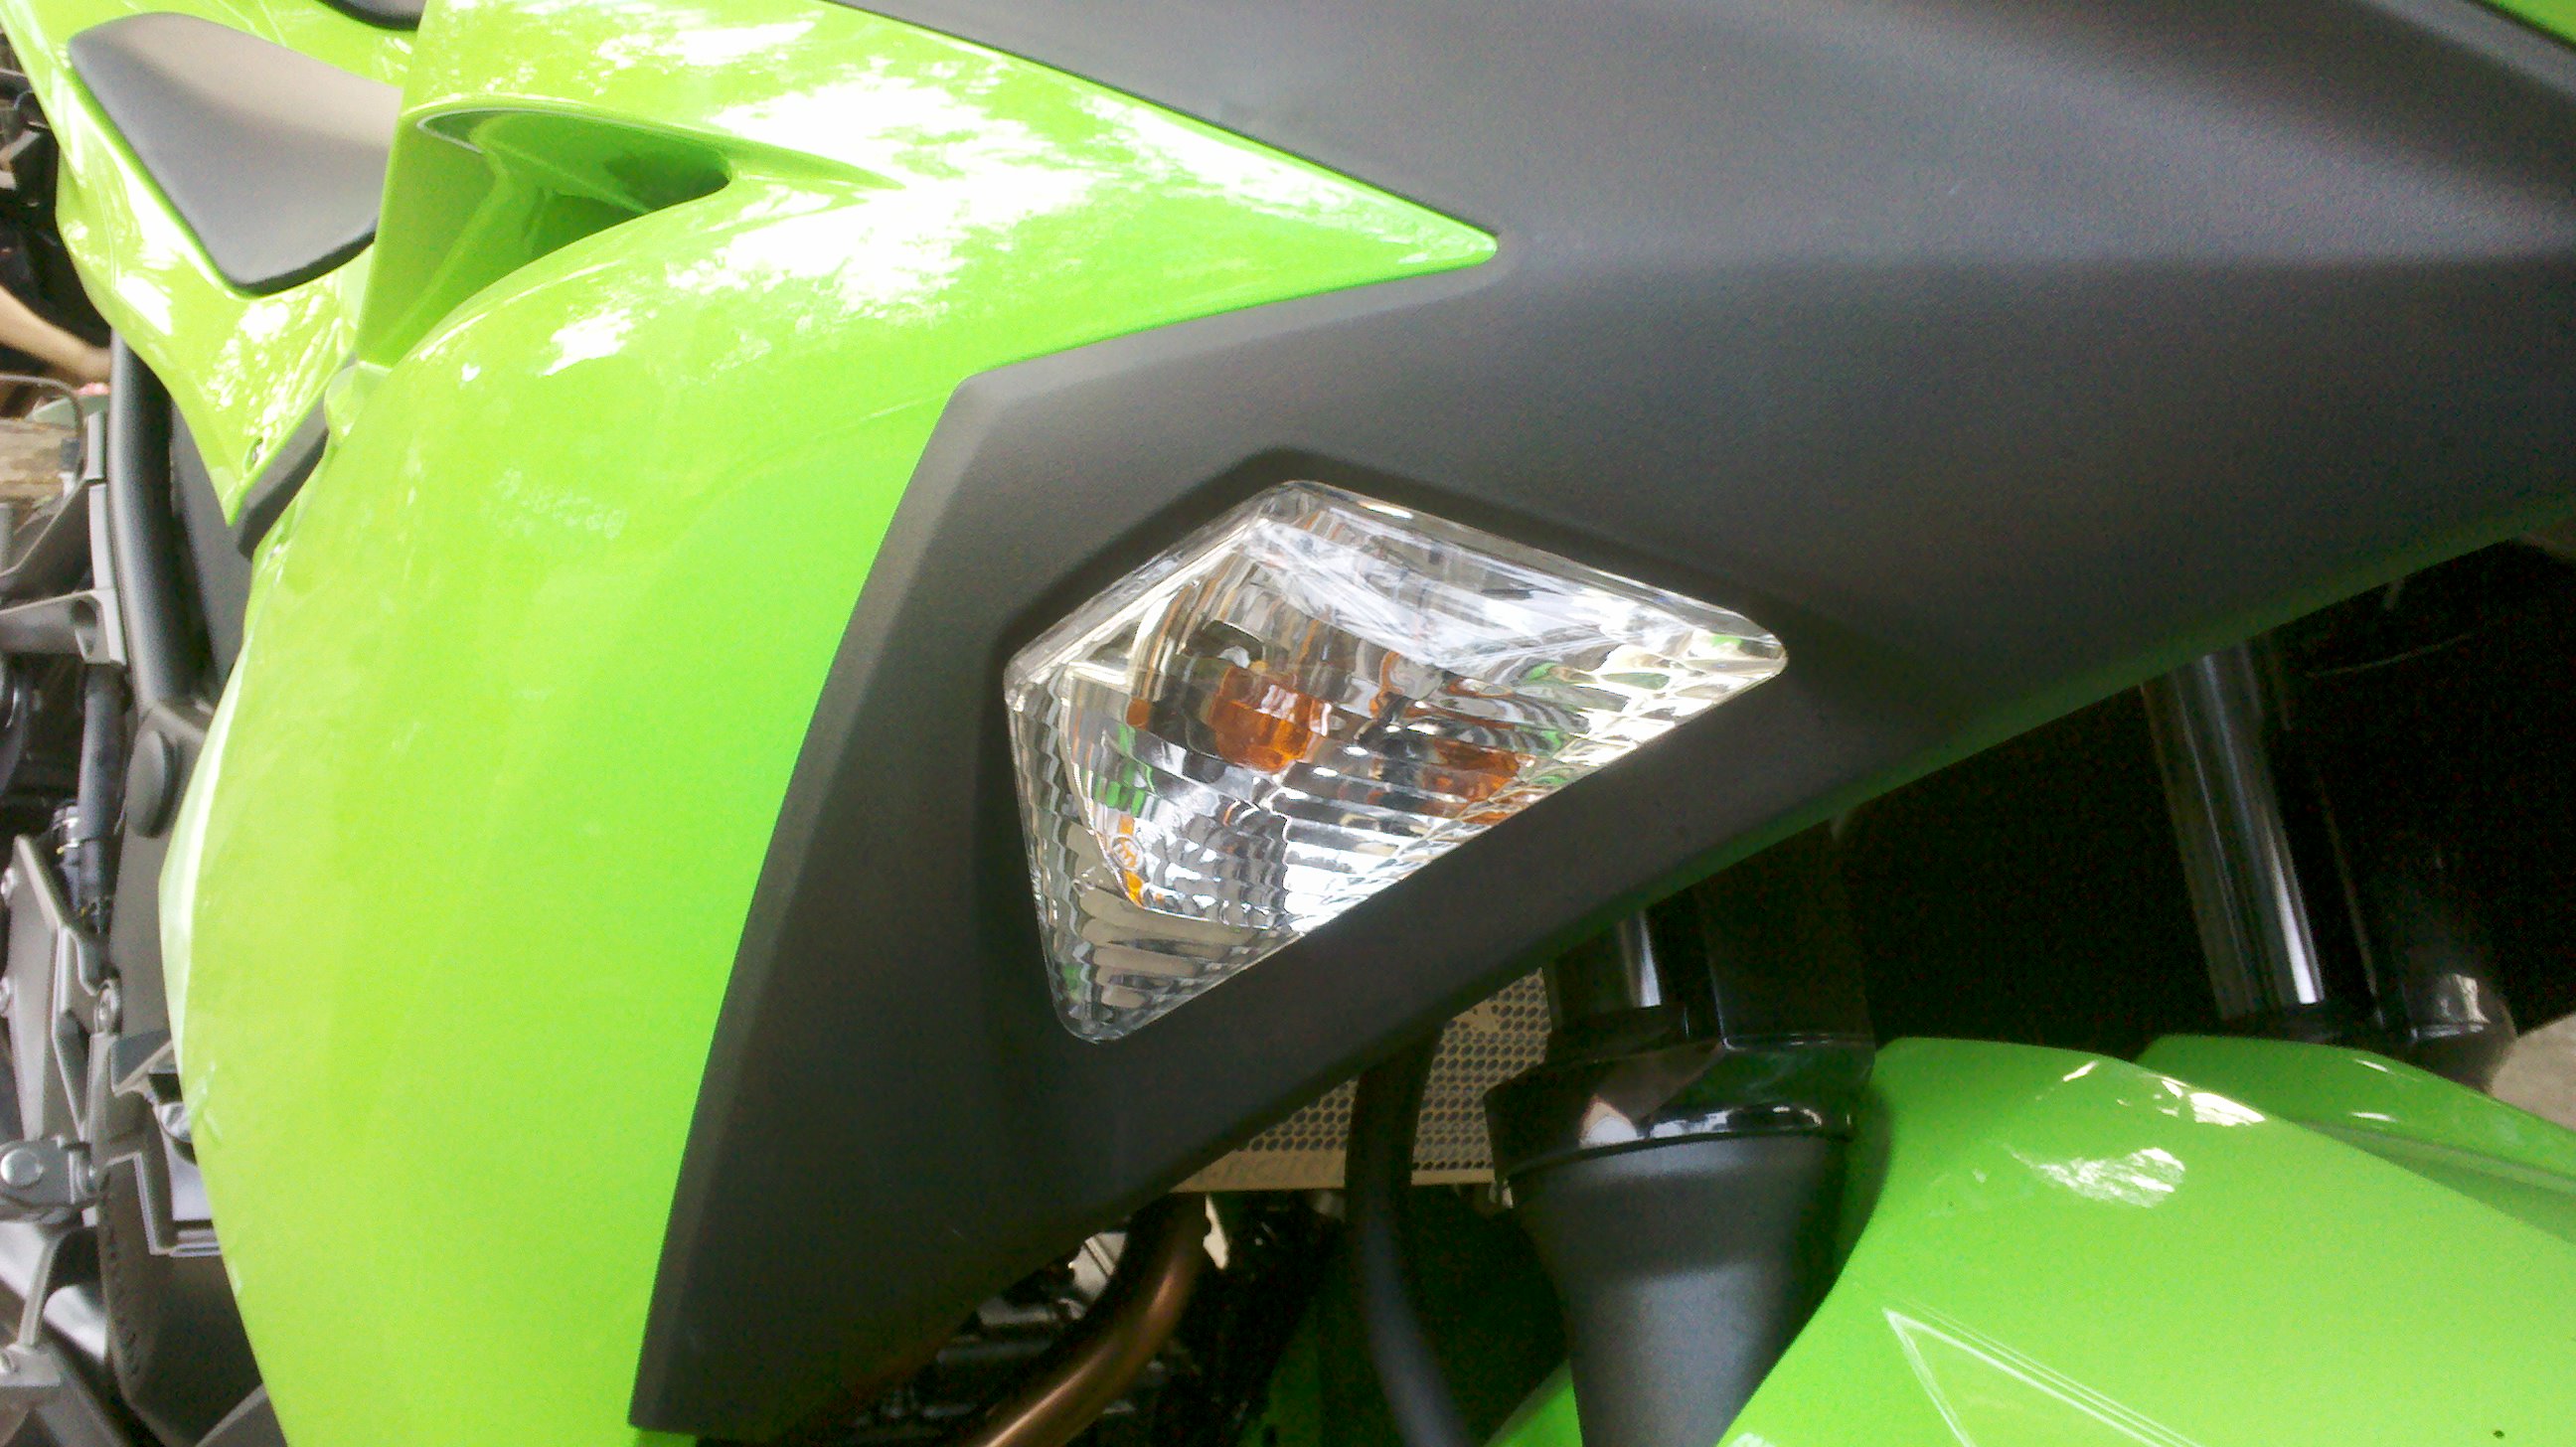 2013 Kawasaki Ninja 250 Fi Riding Impression Part 1 First Look